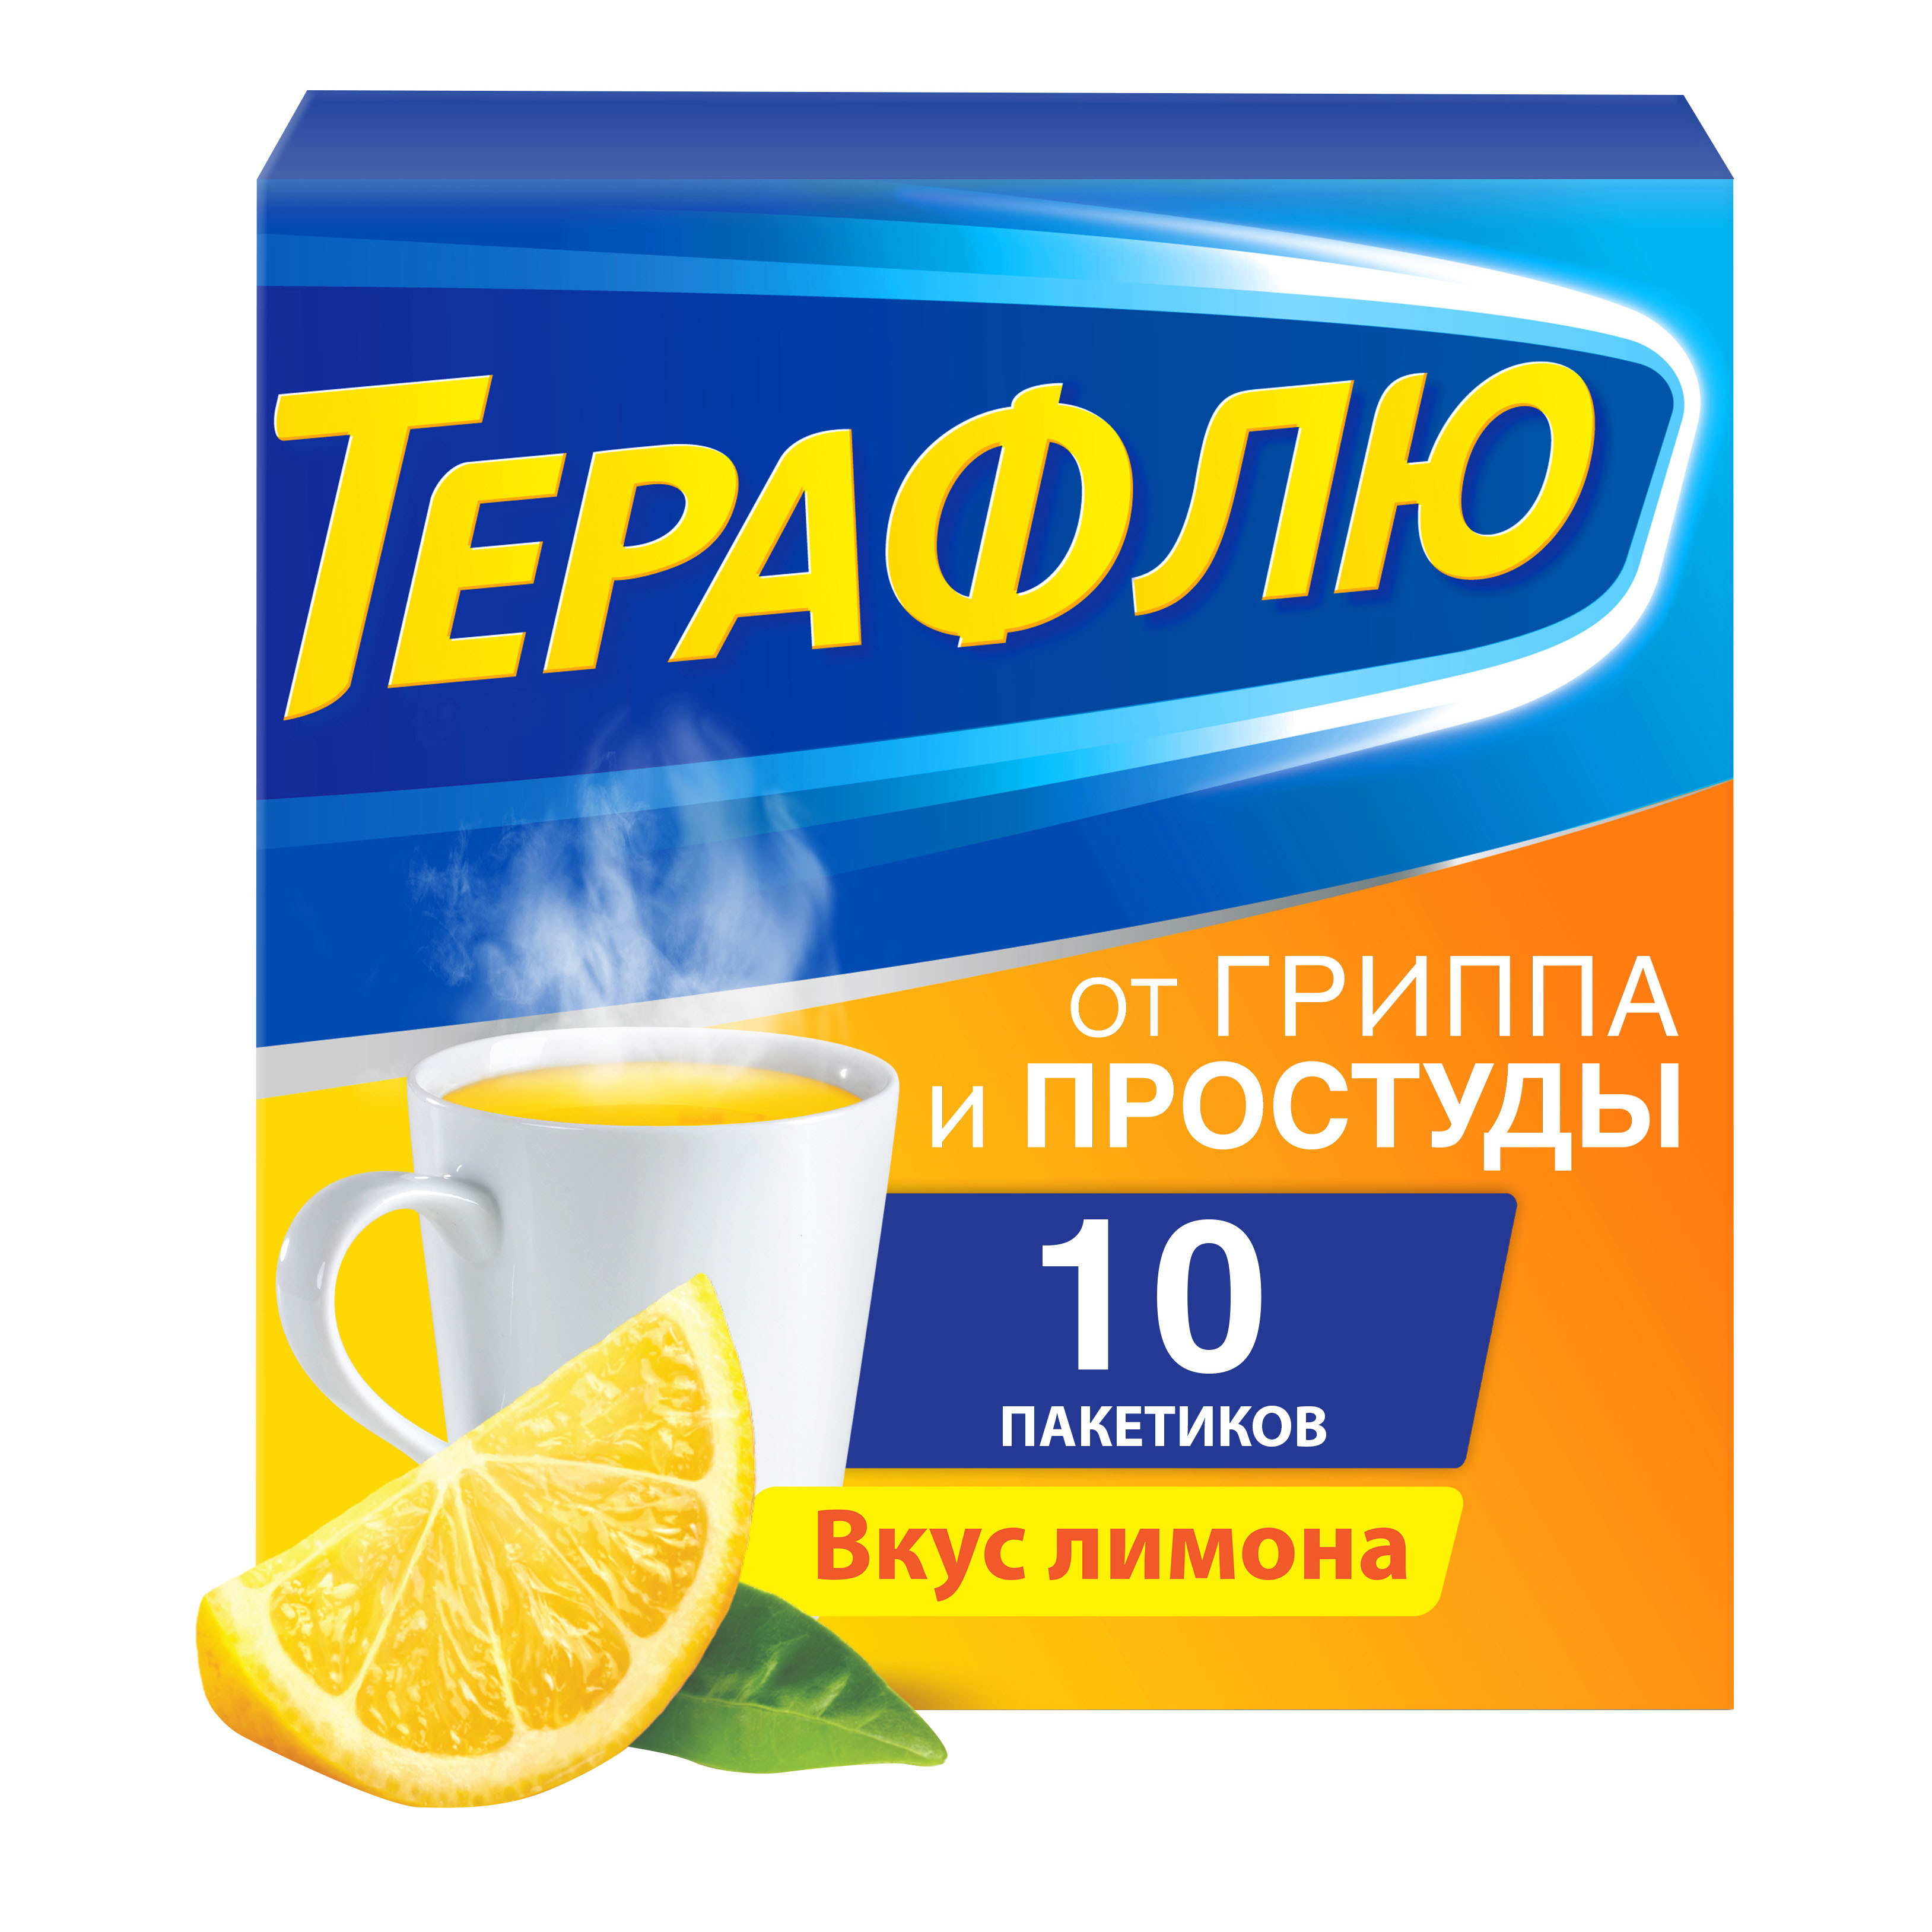 ТераФлю лимон порошок пакеты 10 шт.